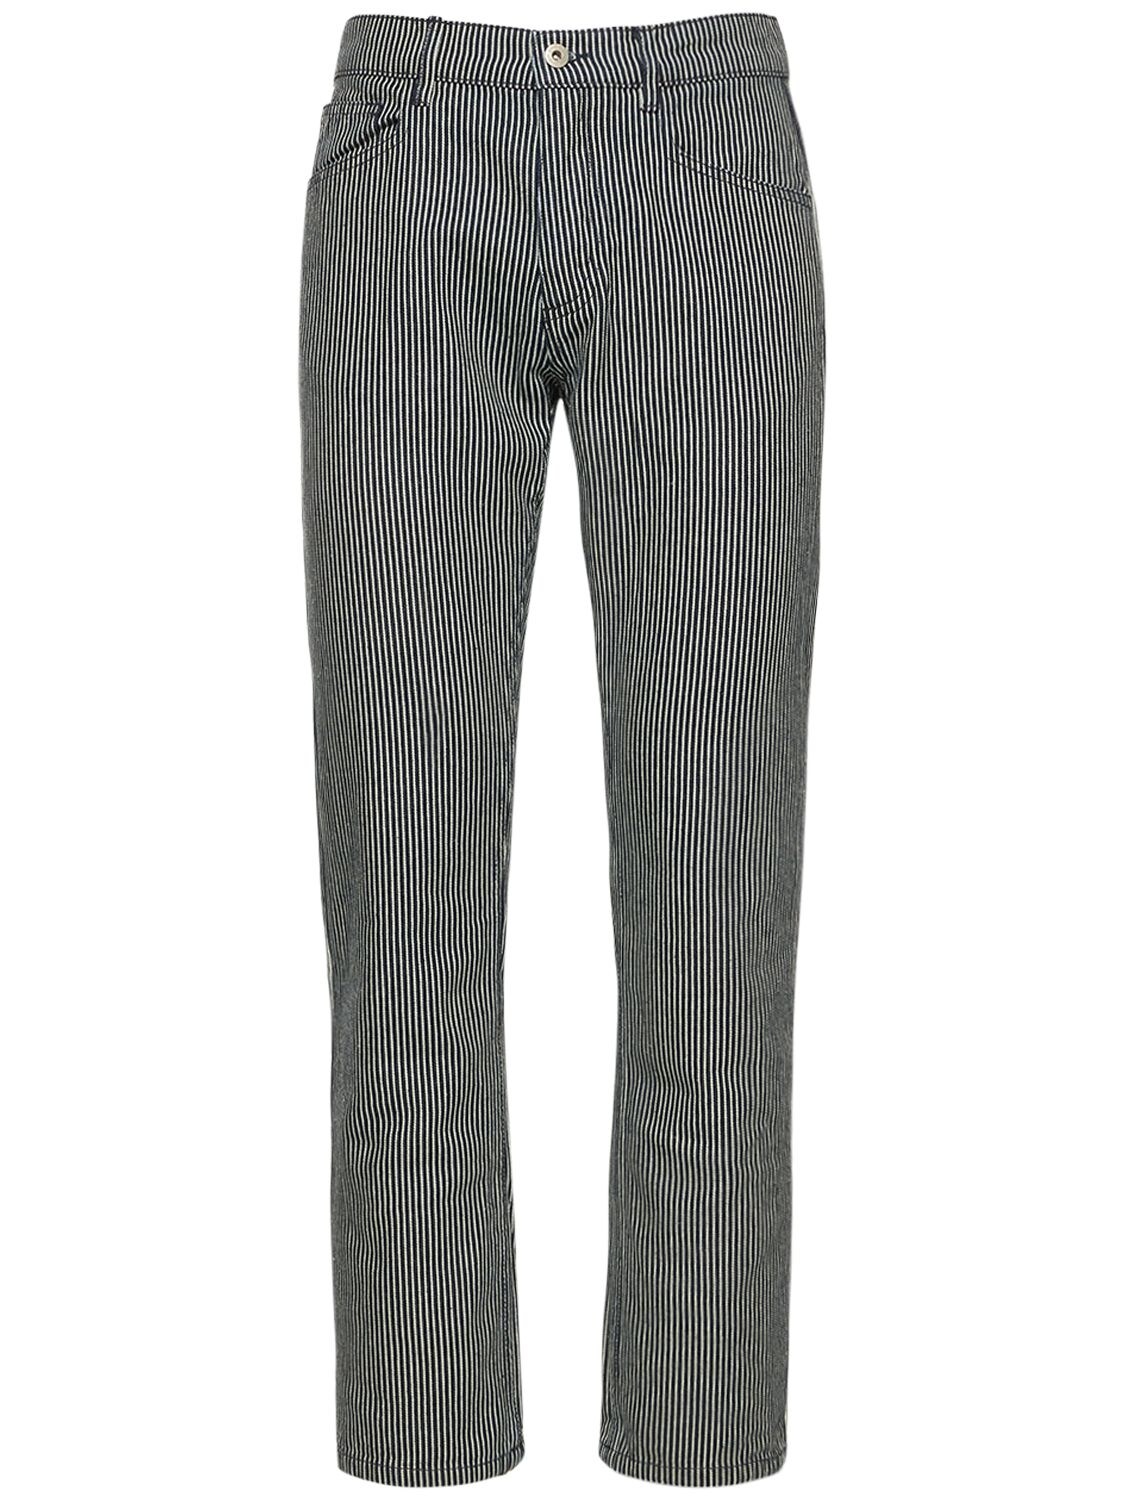 GIMAGUAS 23cm Straight Five Pocket Cotton Jeans